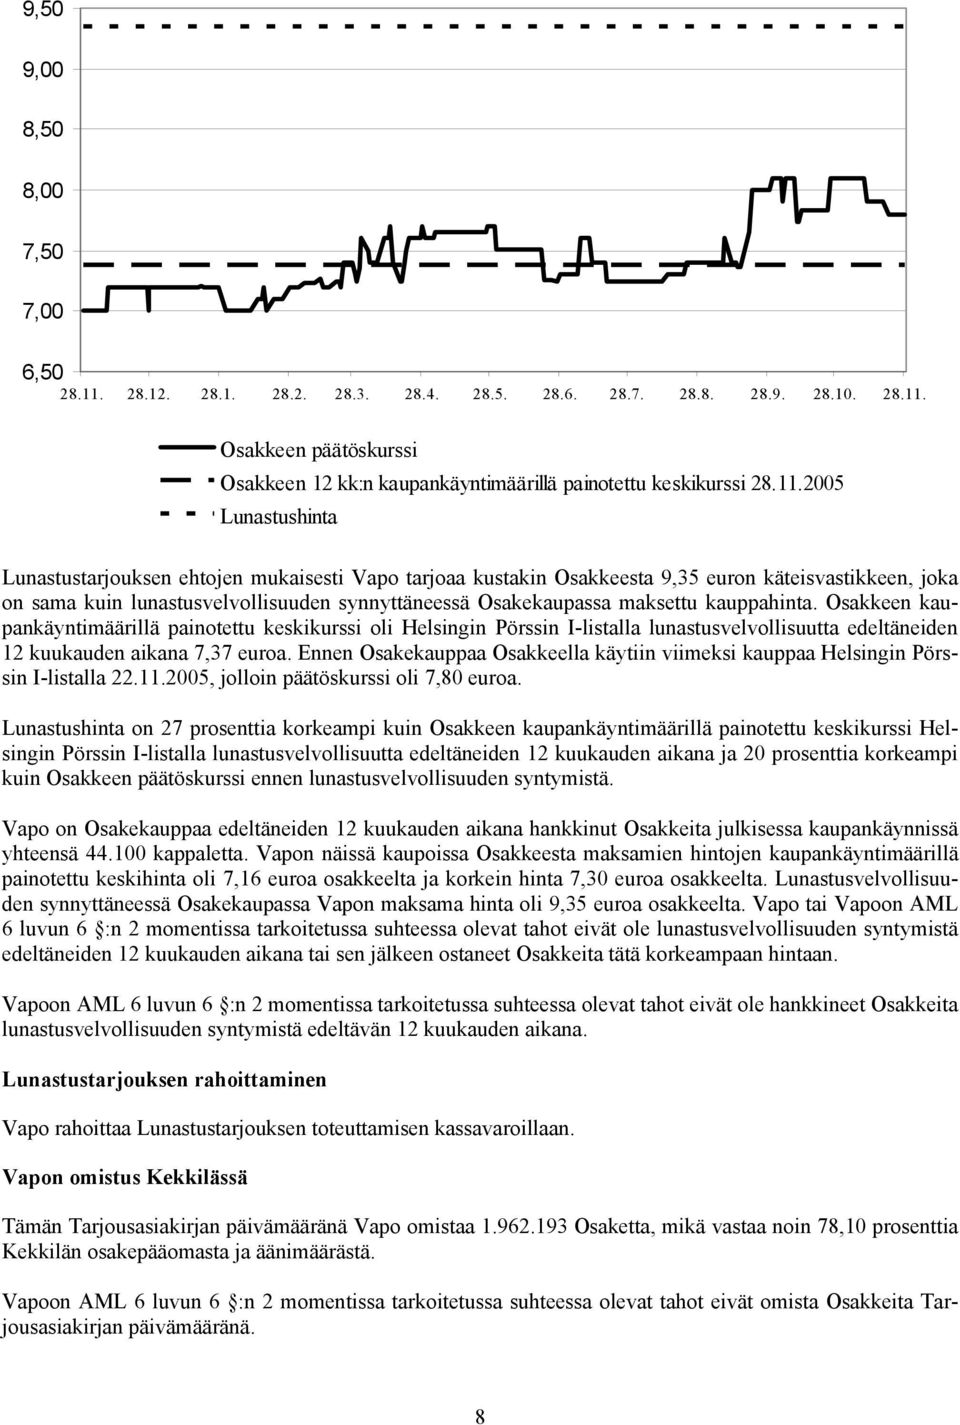 maksettu kauppahinta. Osakkeen kaupankäyntimäärillä painotettu keskikurssi oli Helsingin Pörssin I-listalla lunastusvelvollisuutta edeltäneiden 12 kuukauden aikana 7,37 euroa.